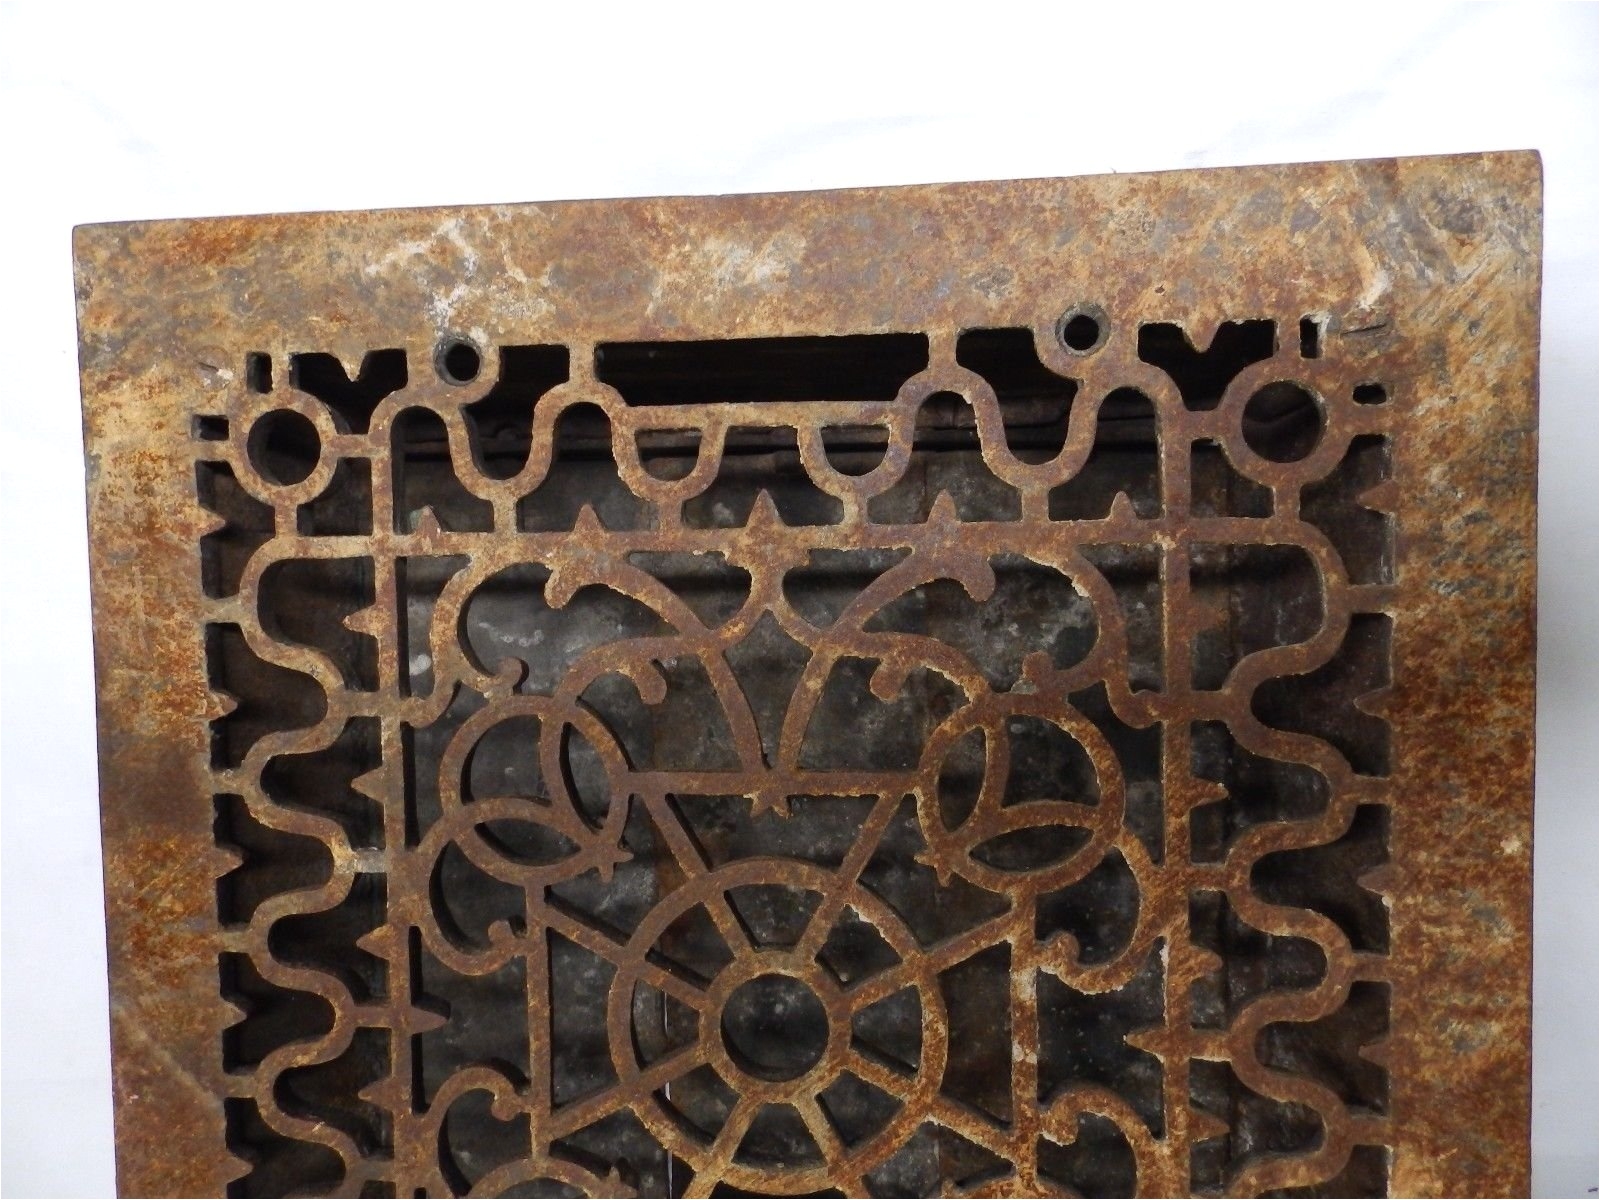 Decorative Cast Aluminum Foundation Vents Antique Cast Iron Victorian Heat Grate Register Vent Old Vtg